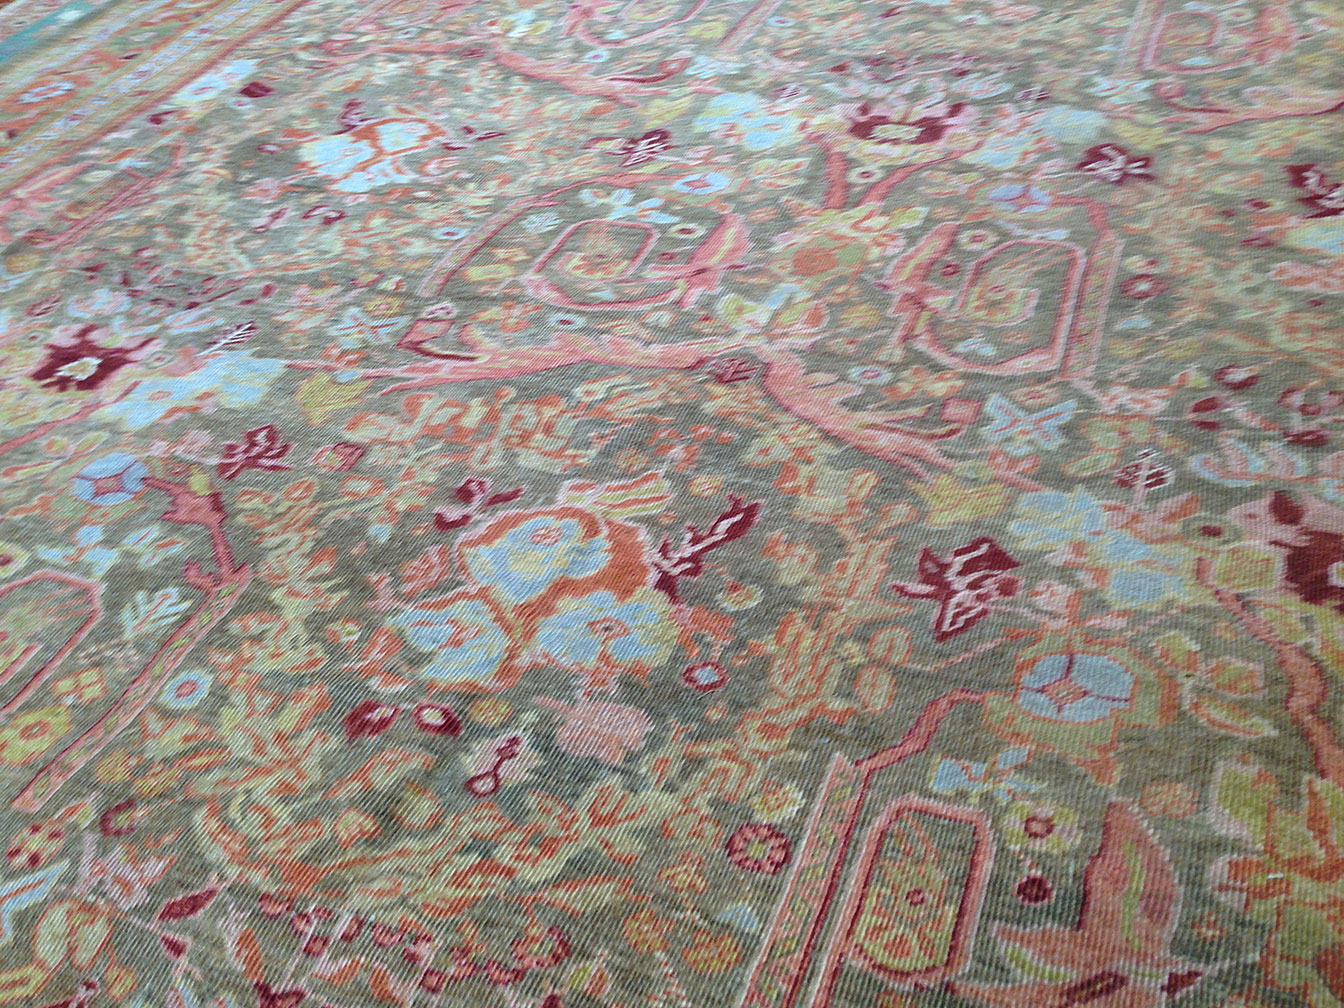 Antique sultan abad Carpet - # 9635